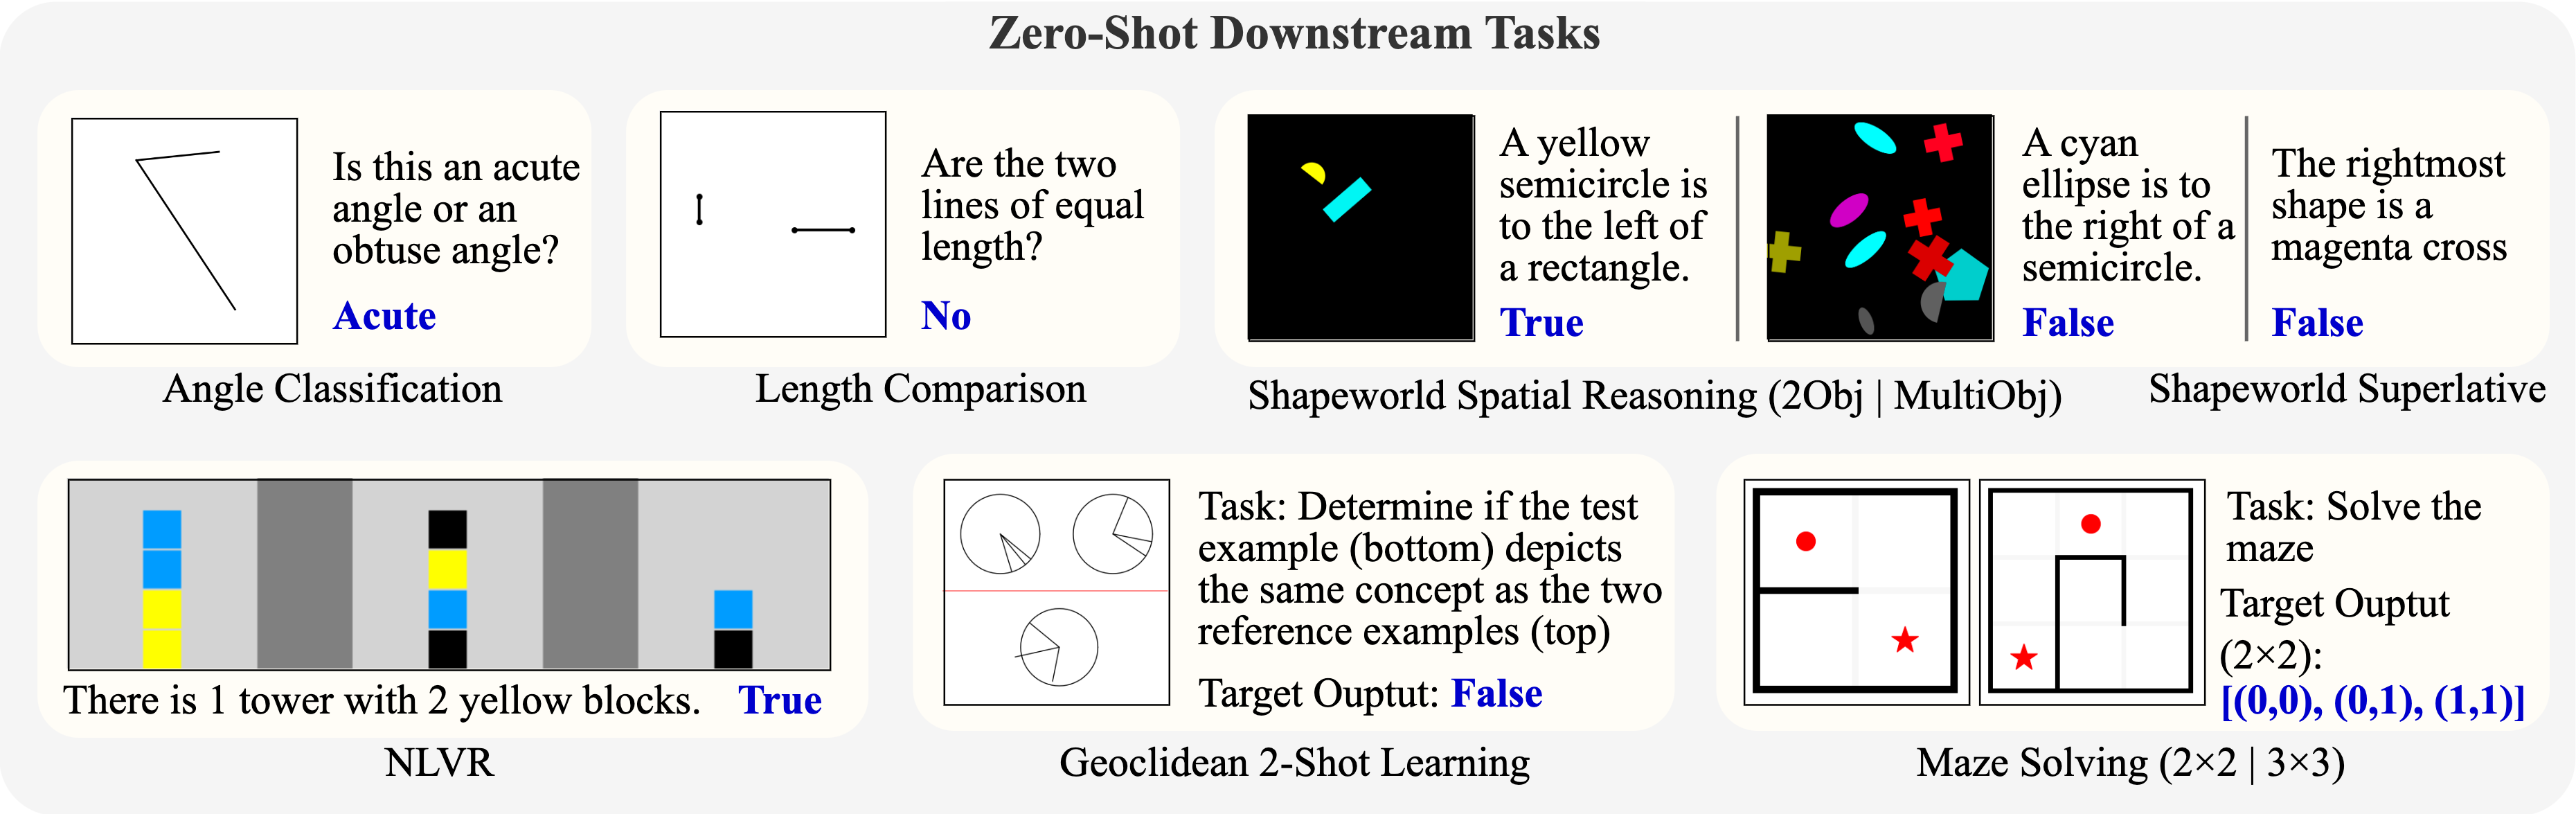 downstream tasks.